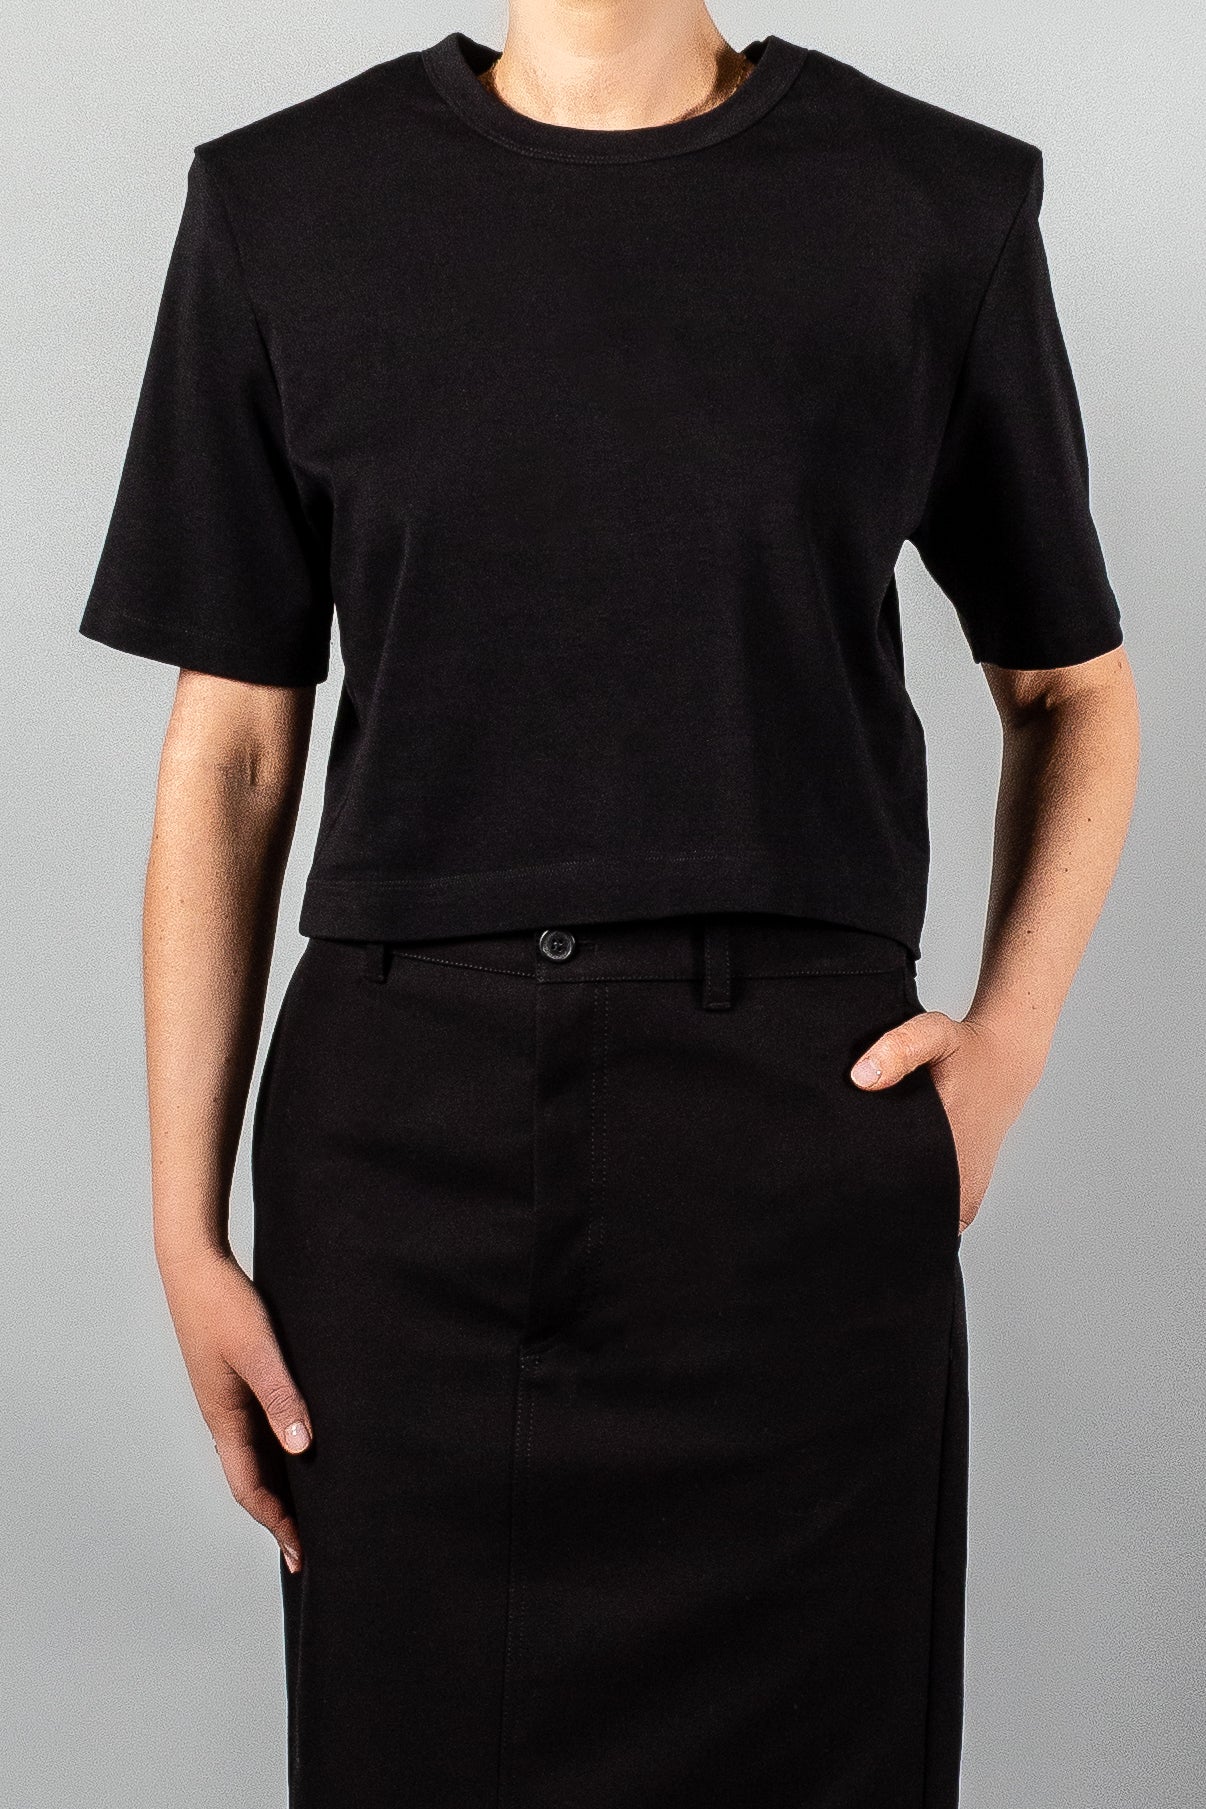 Wardrobe NYC Crop Shoulder Pad T-Shirt-Tops-Misch-Boutique-Vancouver-Canada-misch.ca